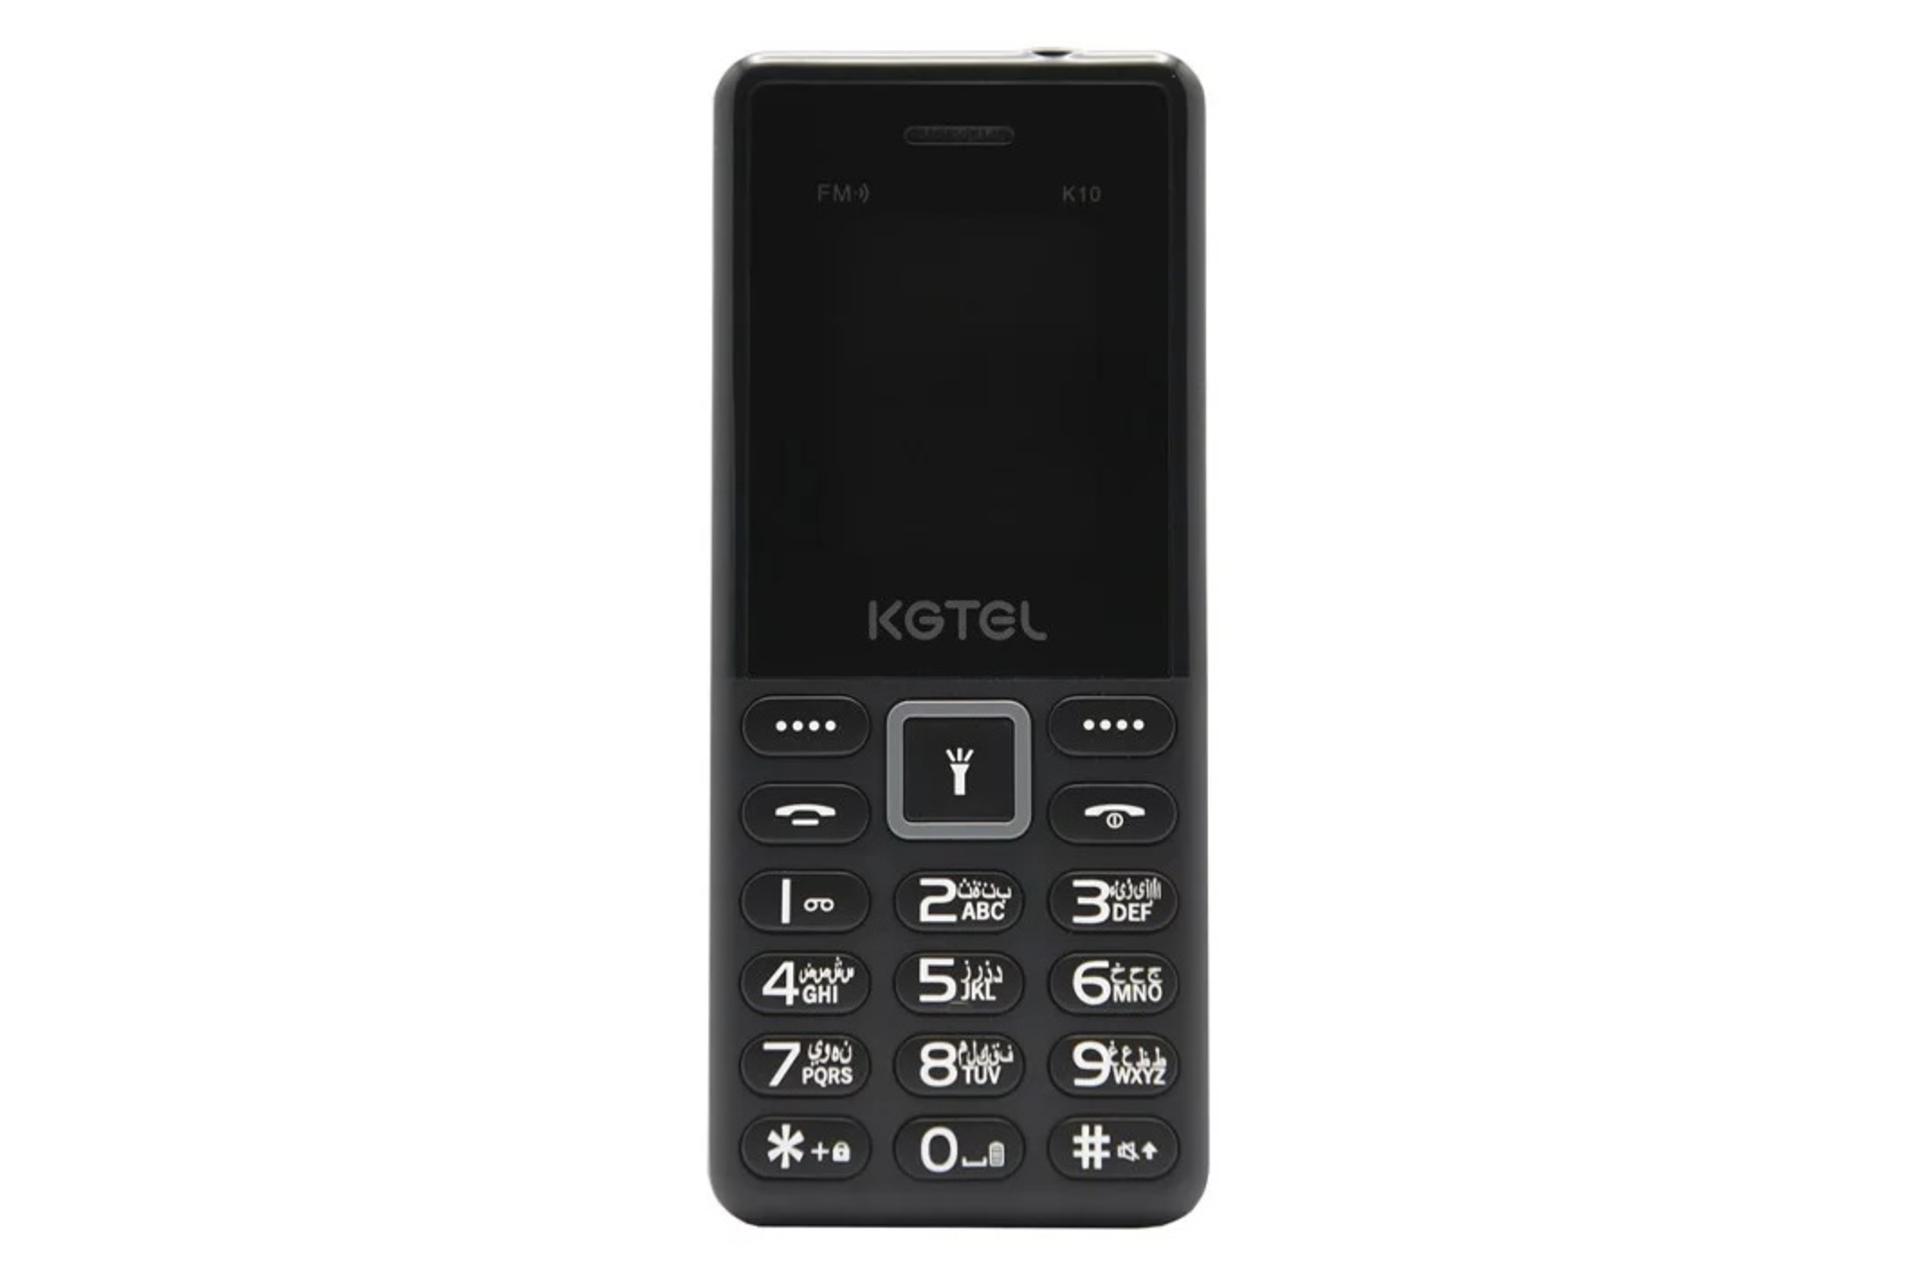 گوشی موبایل کاجیتل KGTEL K10